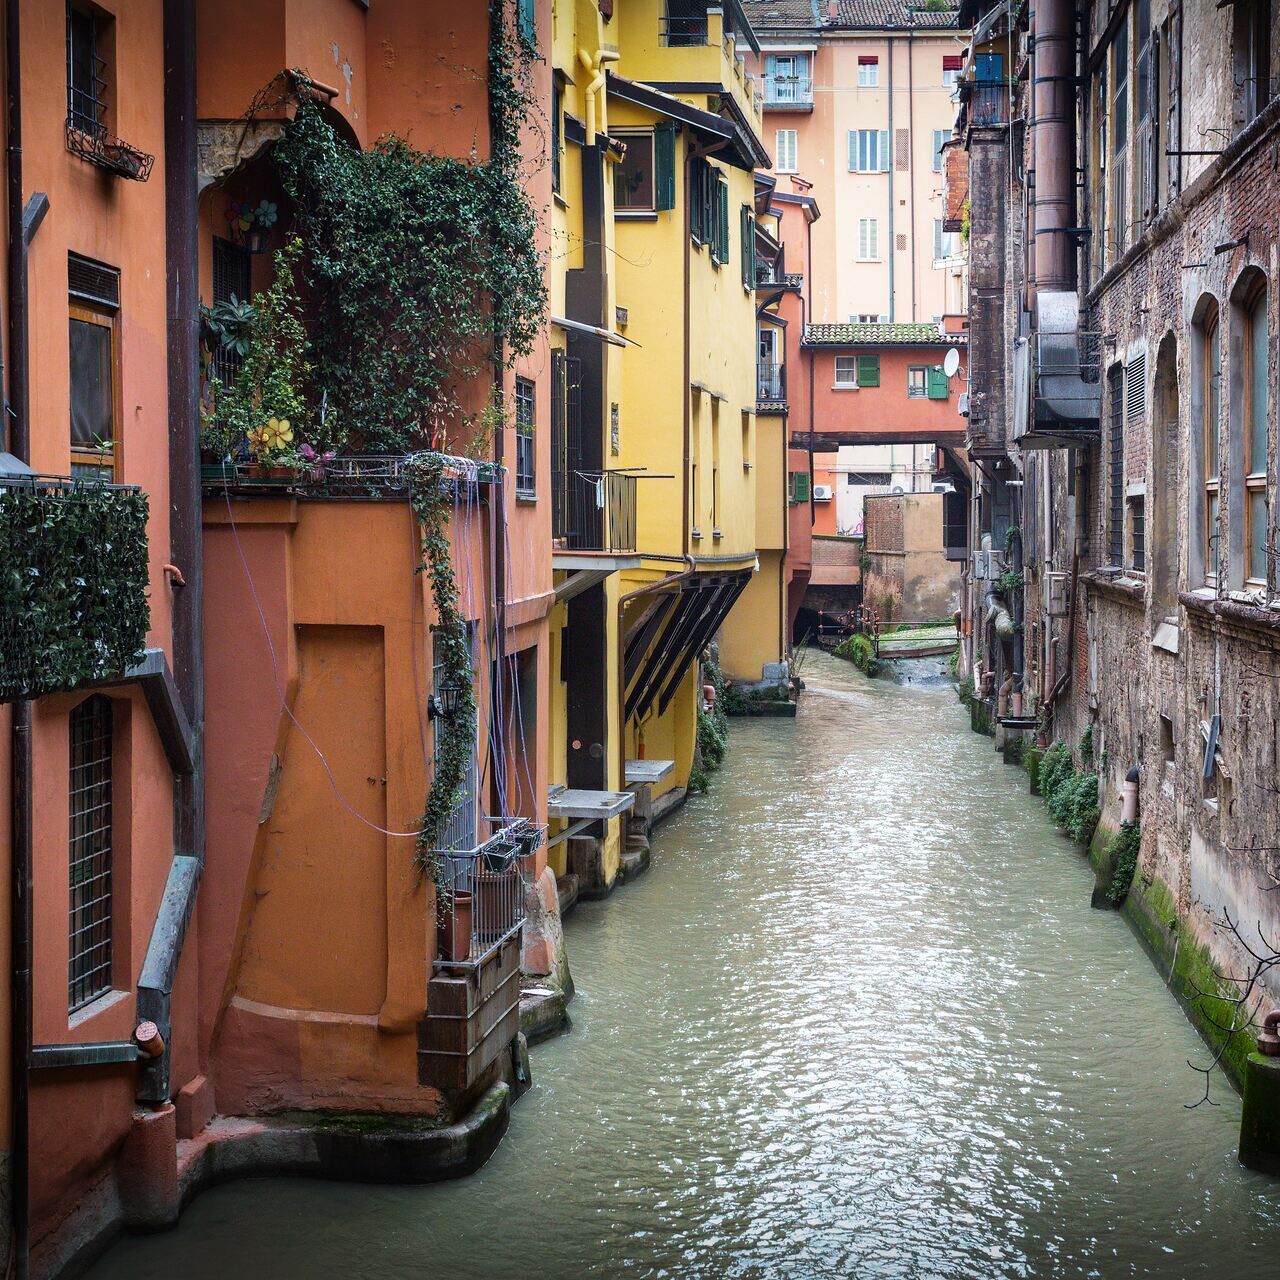 Pioggia: la finestrella di via Piella, affacciata sul Canale delle Moline, è uno dei “luoghi acquatici” più caratteristici del centro di Bologna